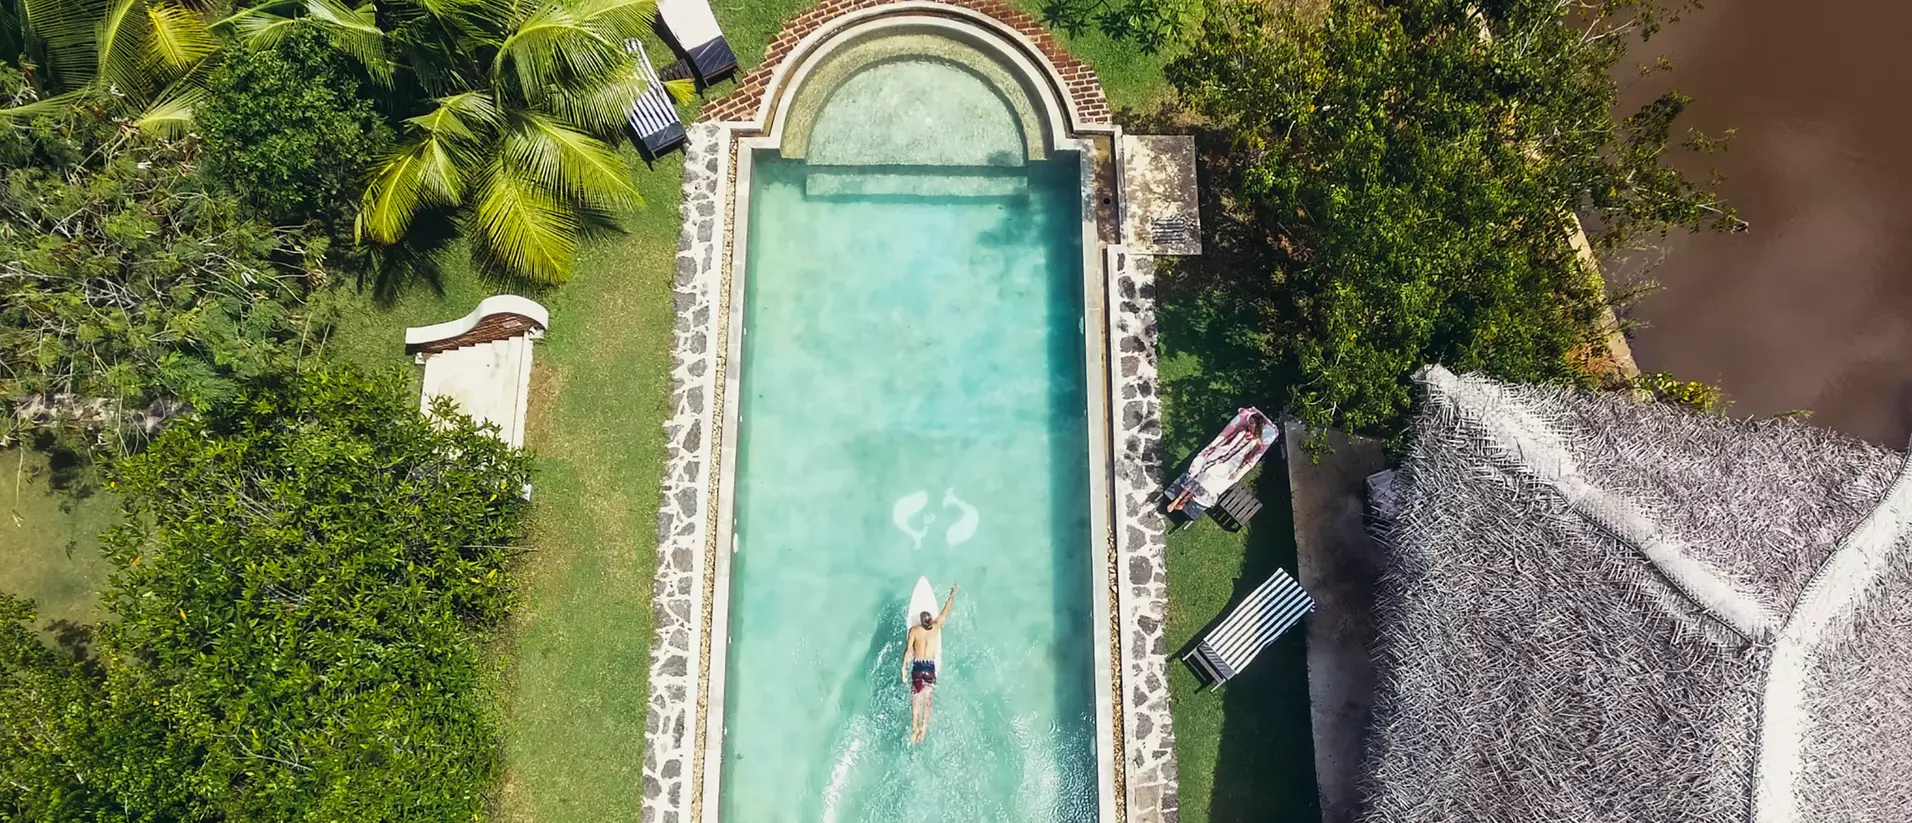 Surf and Yoga Sri Lanka Unawatuna Pool Surfboard